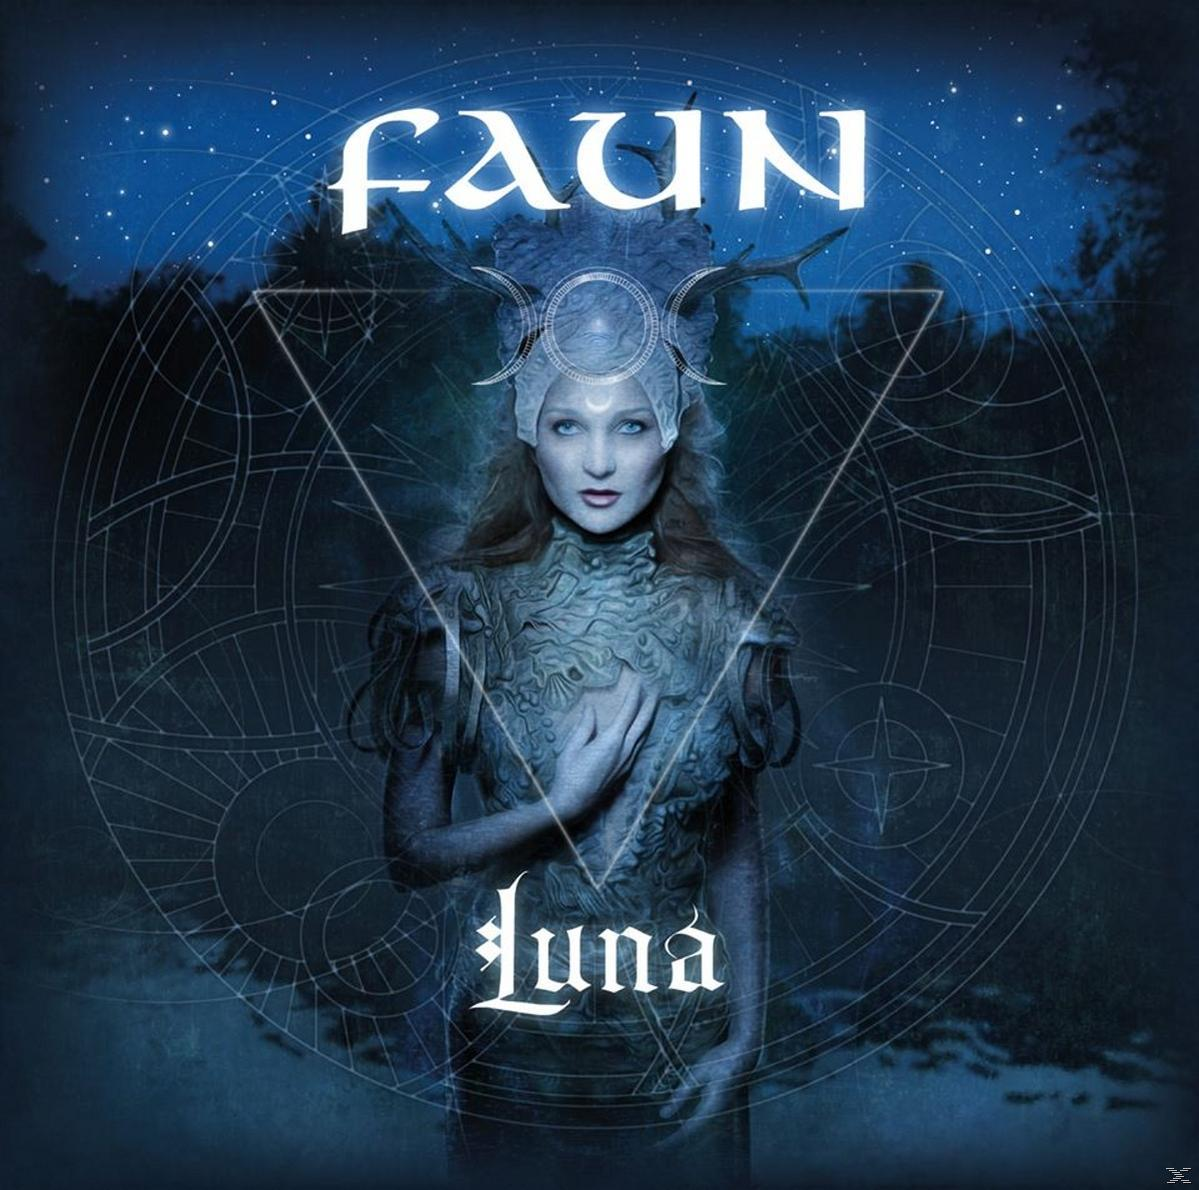 (CD) Faun - Luna -